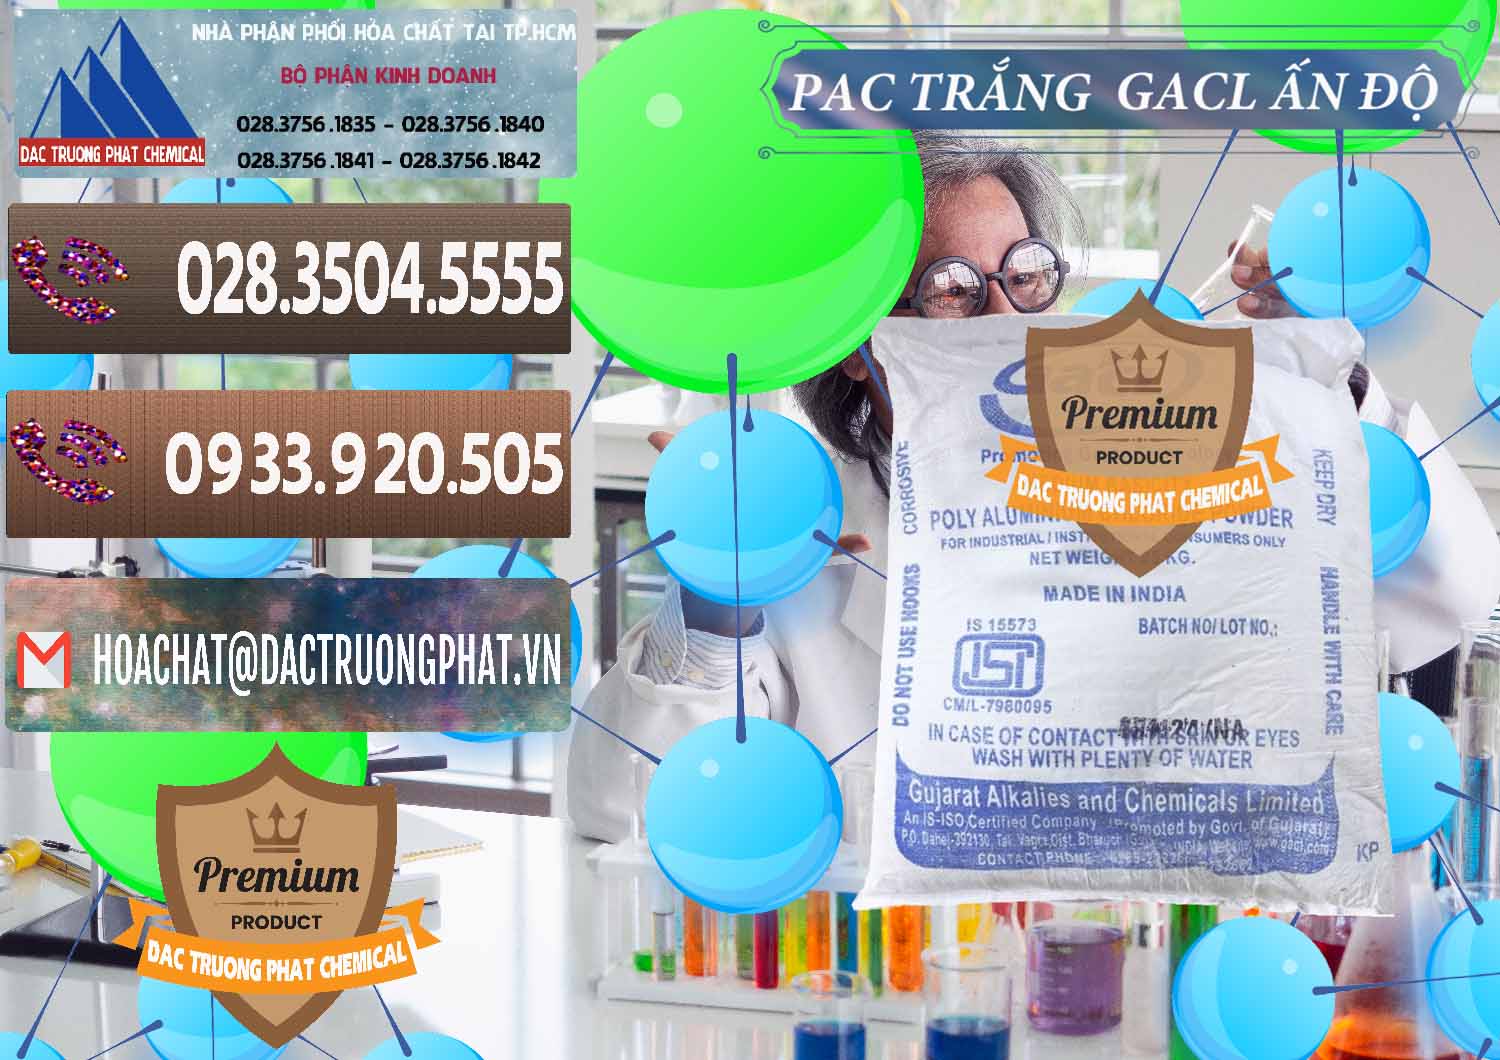 Cty chuyên bán - cung cấp PAC - Polyaluminium Chloride Trắng GACL Ấn Độ India - 0266 - Kinh doanh _ phân phối hóa chất tại TP.HCM - hoachatviet.net